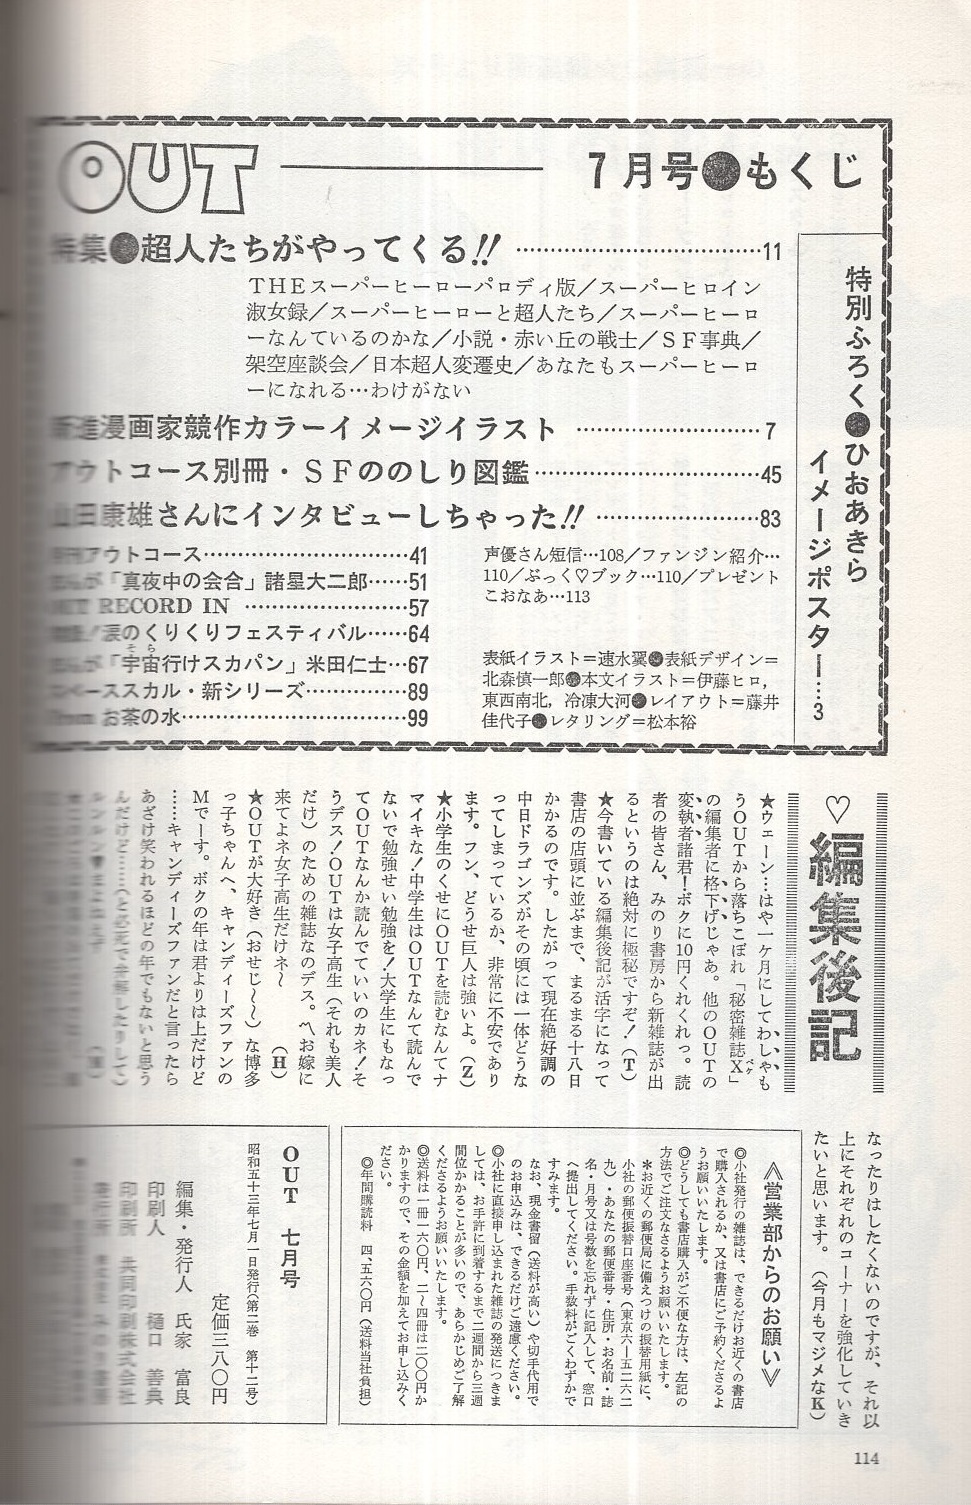 月刊アウト 昭和53年7月号 表紙イラスト・速水翼(〈特集 超人たちが 